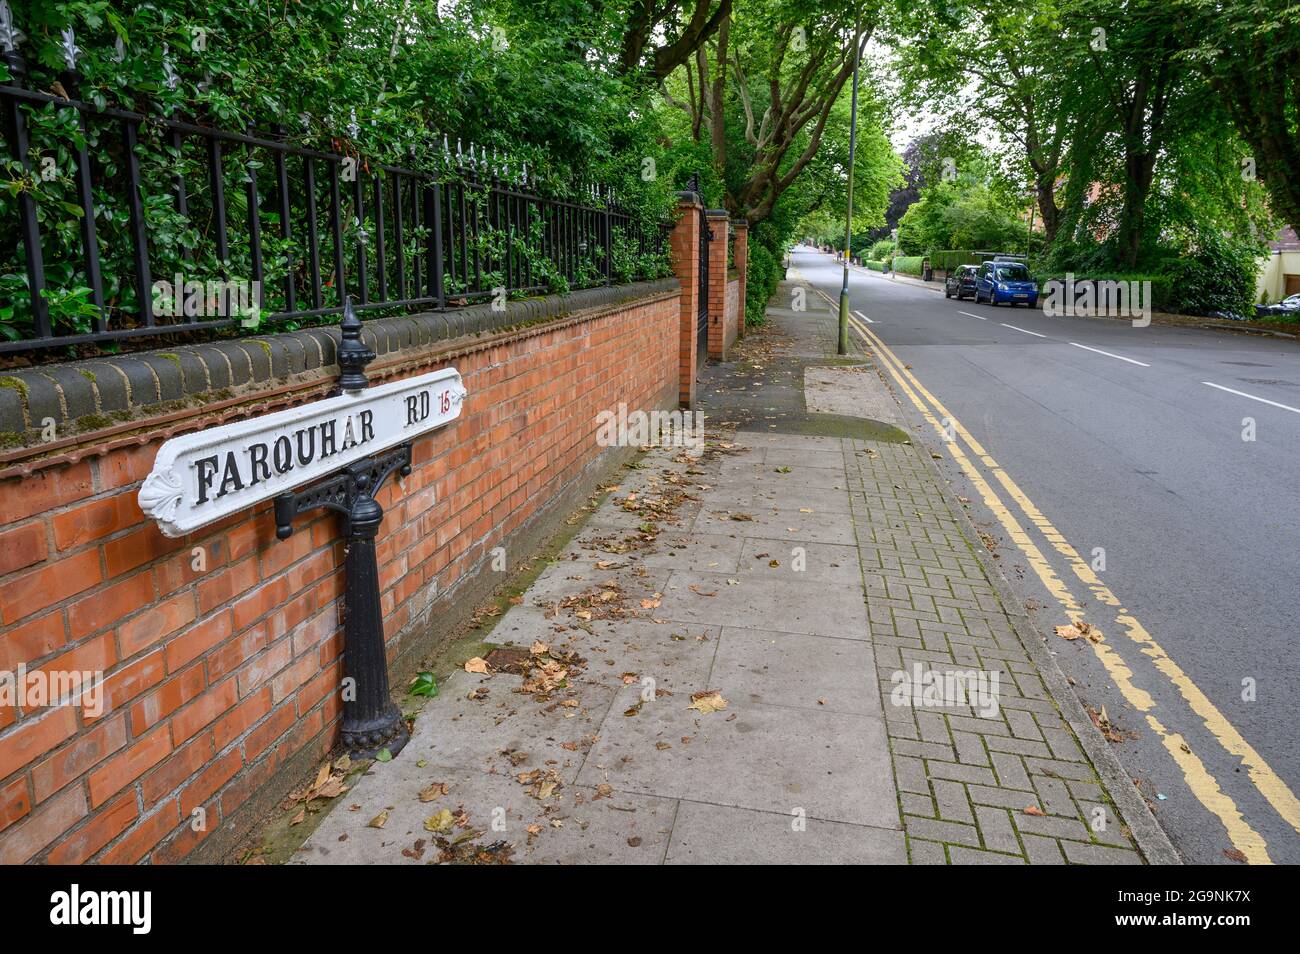 Millionnaires reste du monde: Farquhar Road signe de nom de rue à l'ancienne sur une route très riche dans la zone 15 de code postal de Birmingham, West Midlands, Angleterre. Banque D'Images